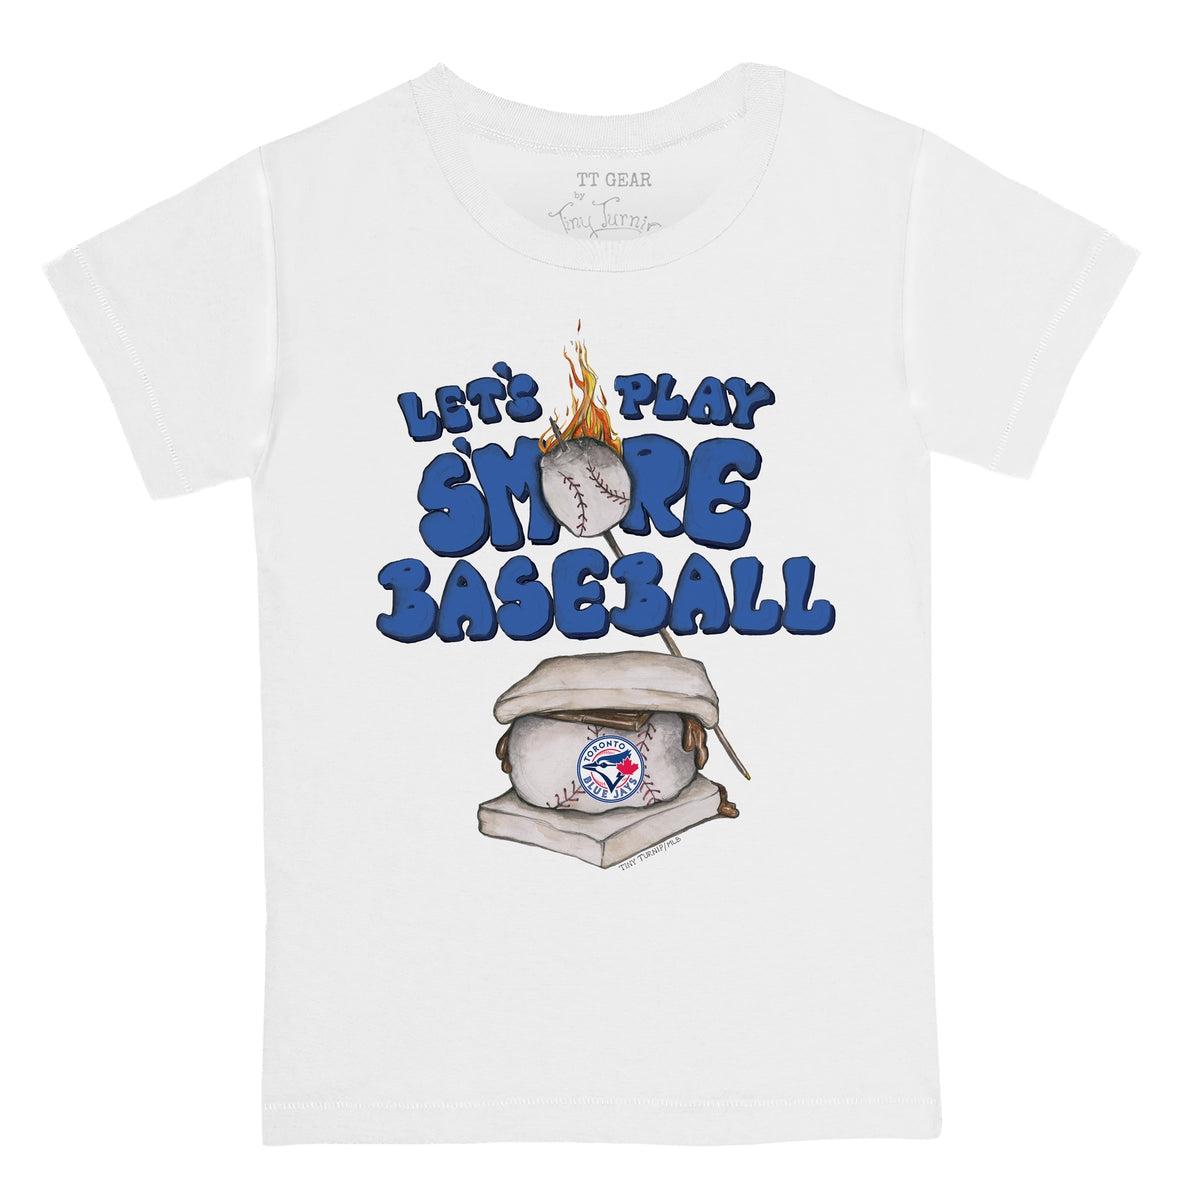 Girls Youth Tiny Turnip Royal Toronto Blue Jays Baseball Tear Fringe T-Shirt Size: Extra Large